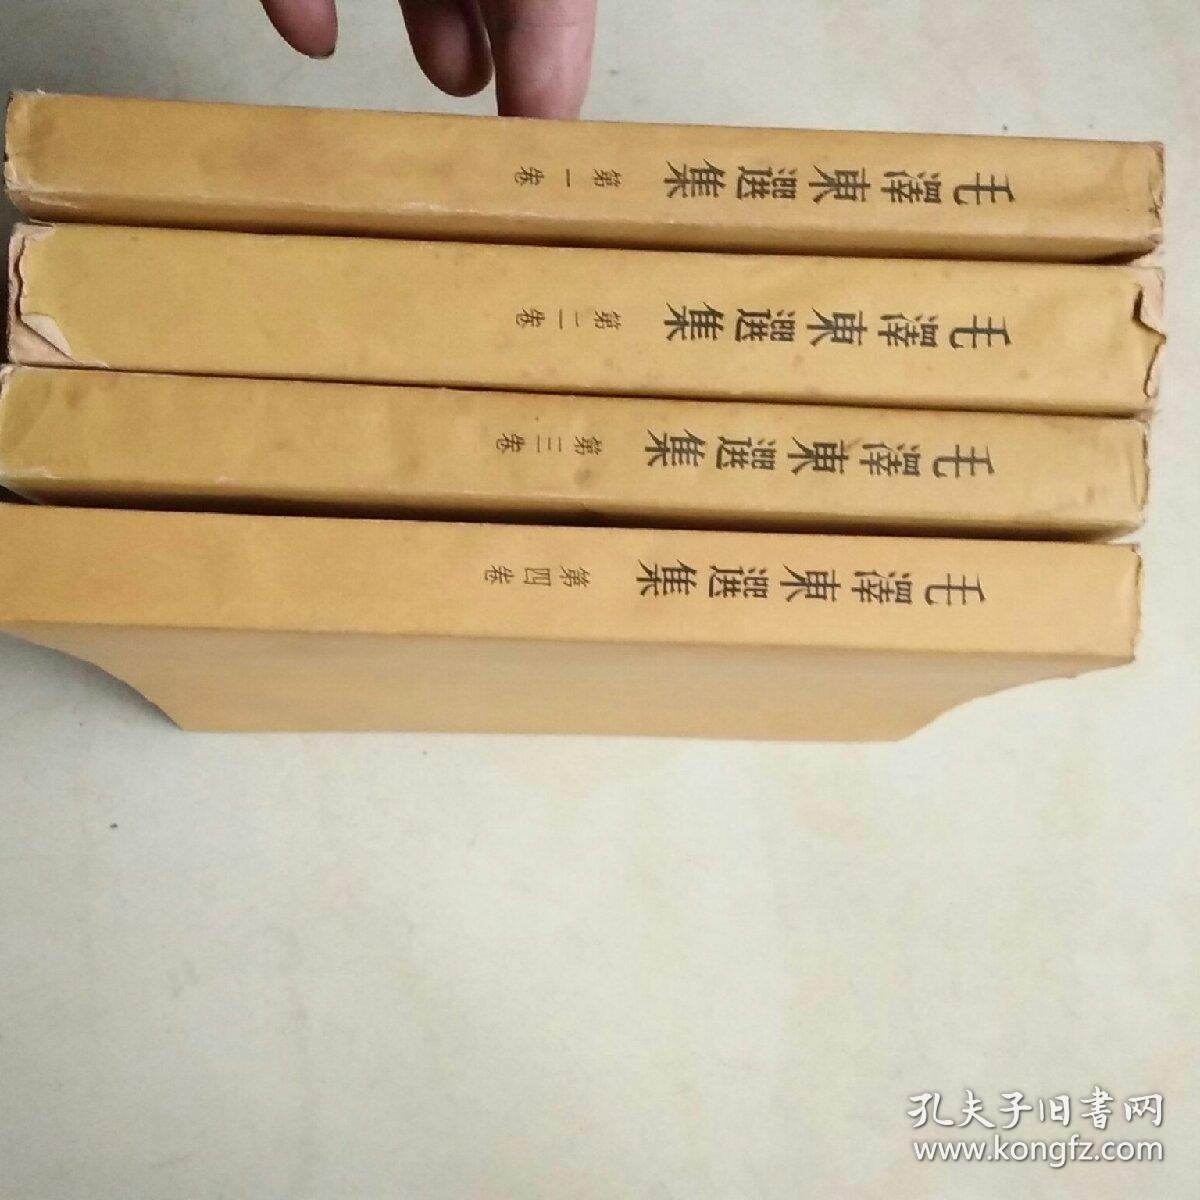 毛泽东选集（1-4全）3本一版一印.第一卷不是一版一印